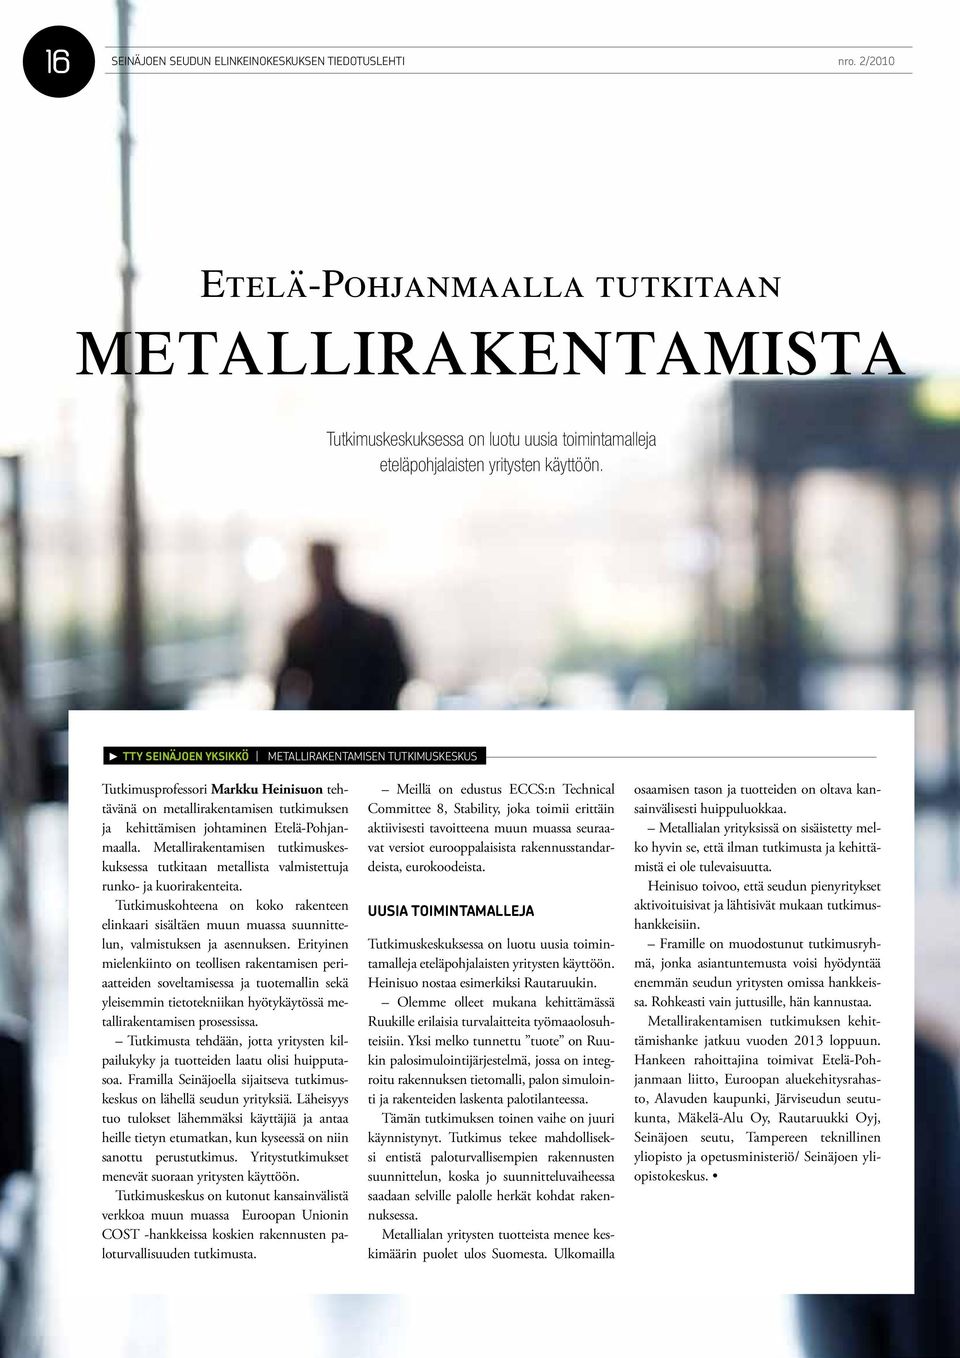 TTY SEINÄJOEN YKSIKKÖ METALLIRAKENTAMISEN TUTKIMUSKESKUS Tutkimusprofessori Markku Heinisuon tehtävänä on metallirakentamisen tutkimuksen ja kehittämisen johtaminen Etelä-Pohjanmaalla.